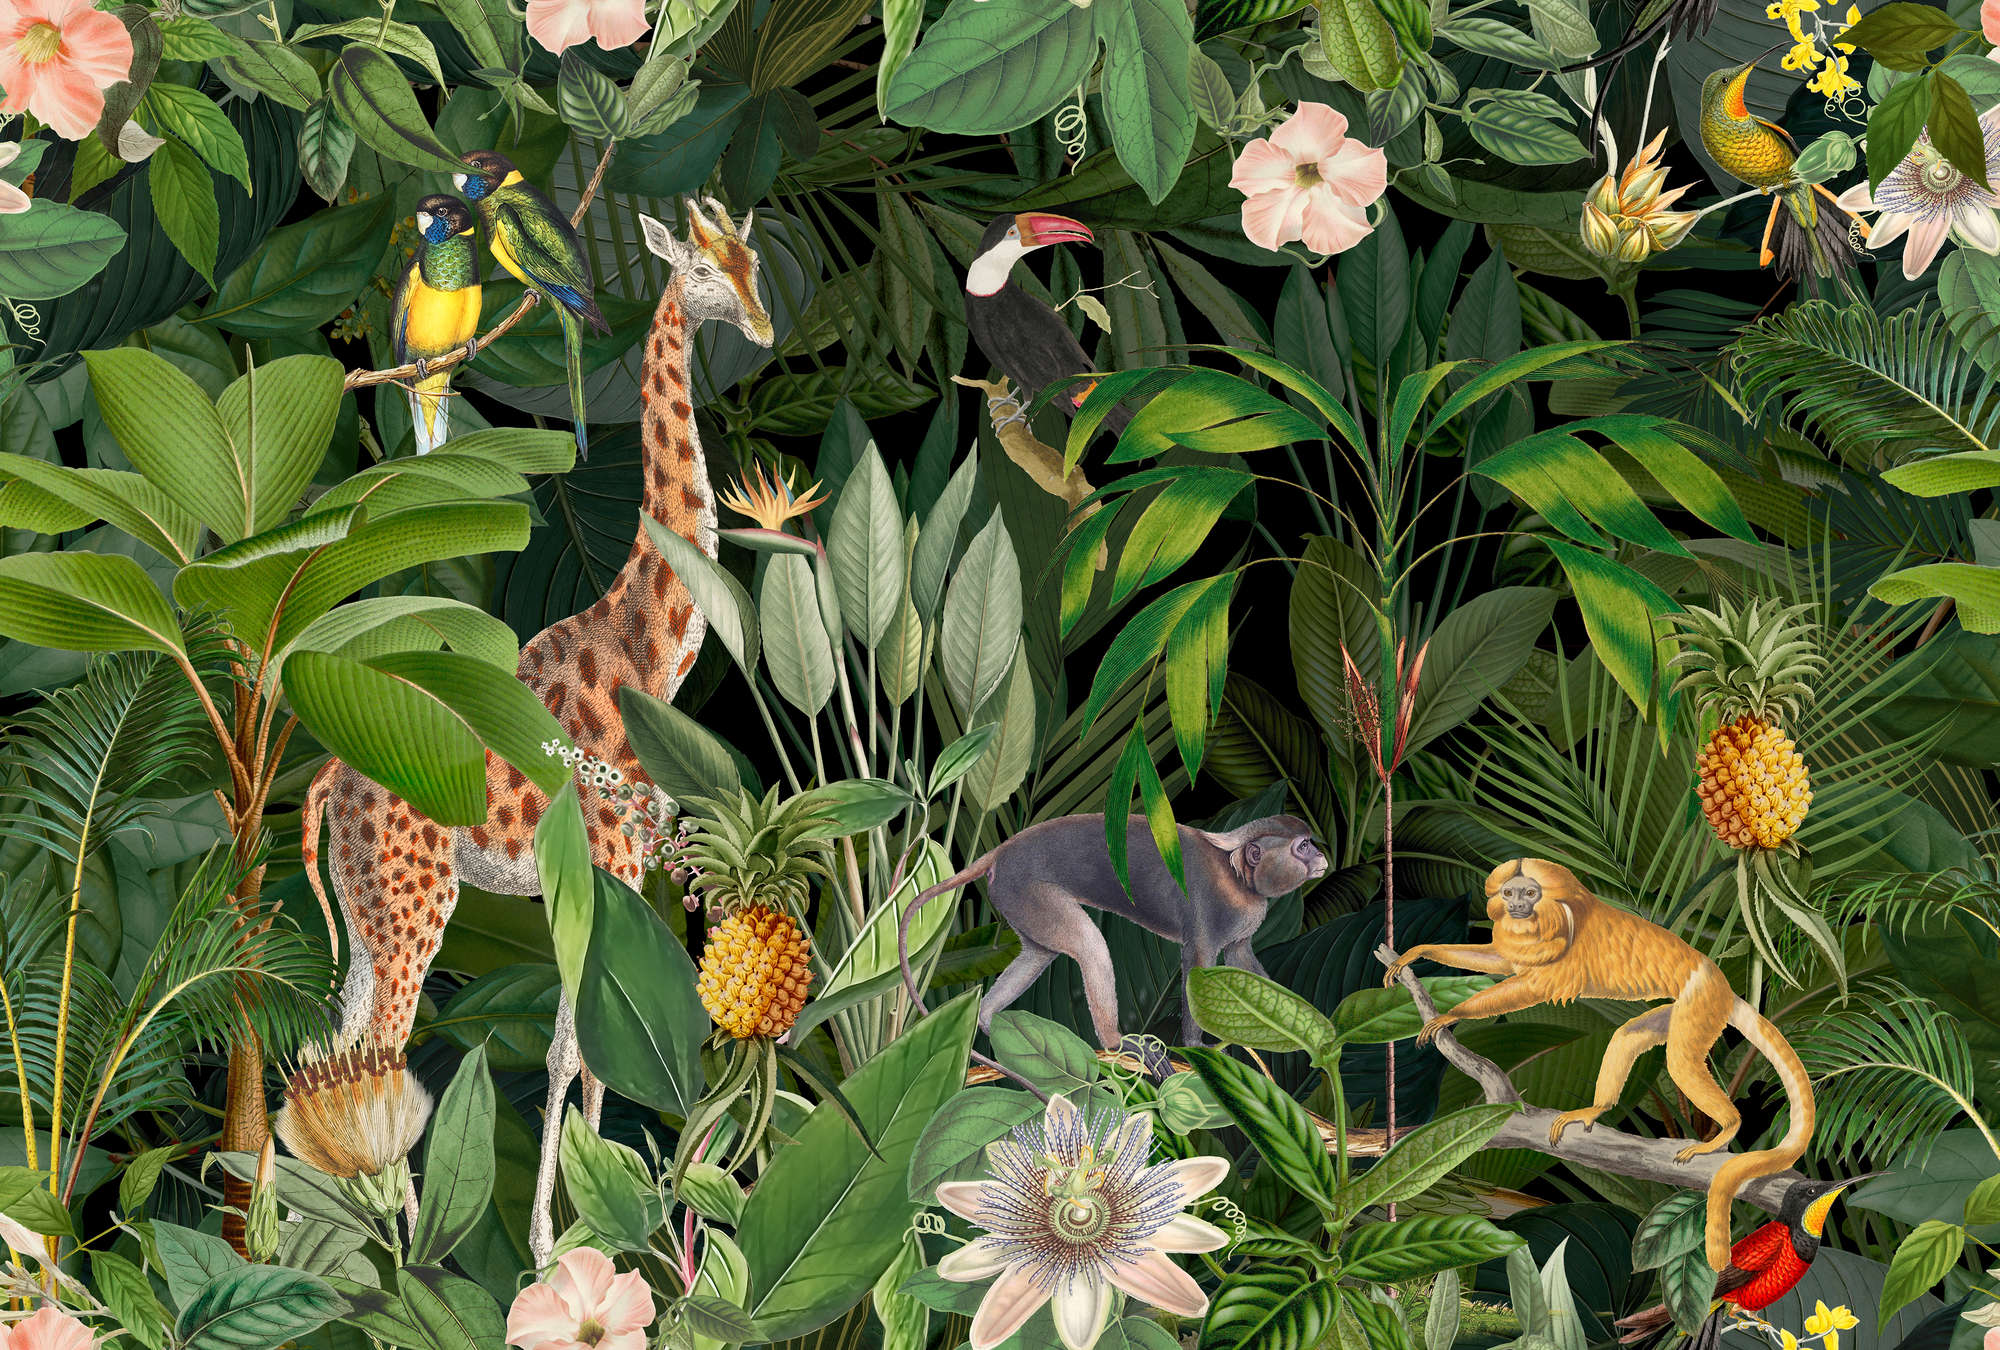             Jungle mural wildlife giraffe, monkeys & birds for Nursery
        